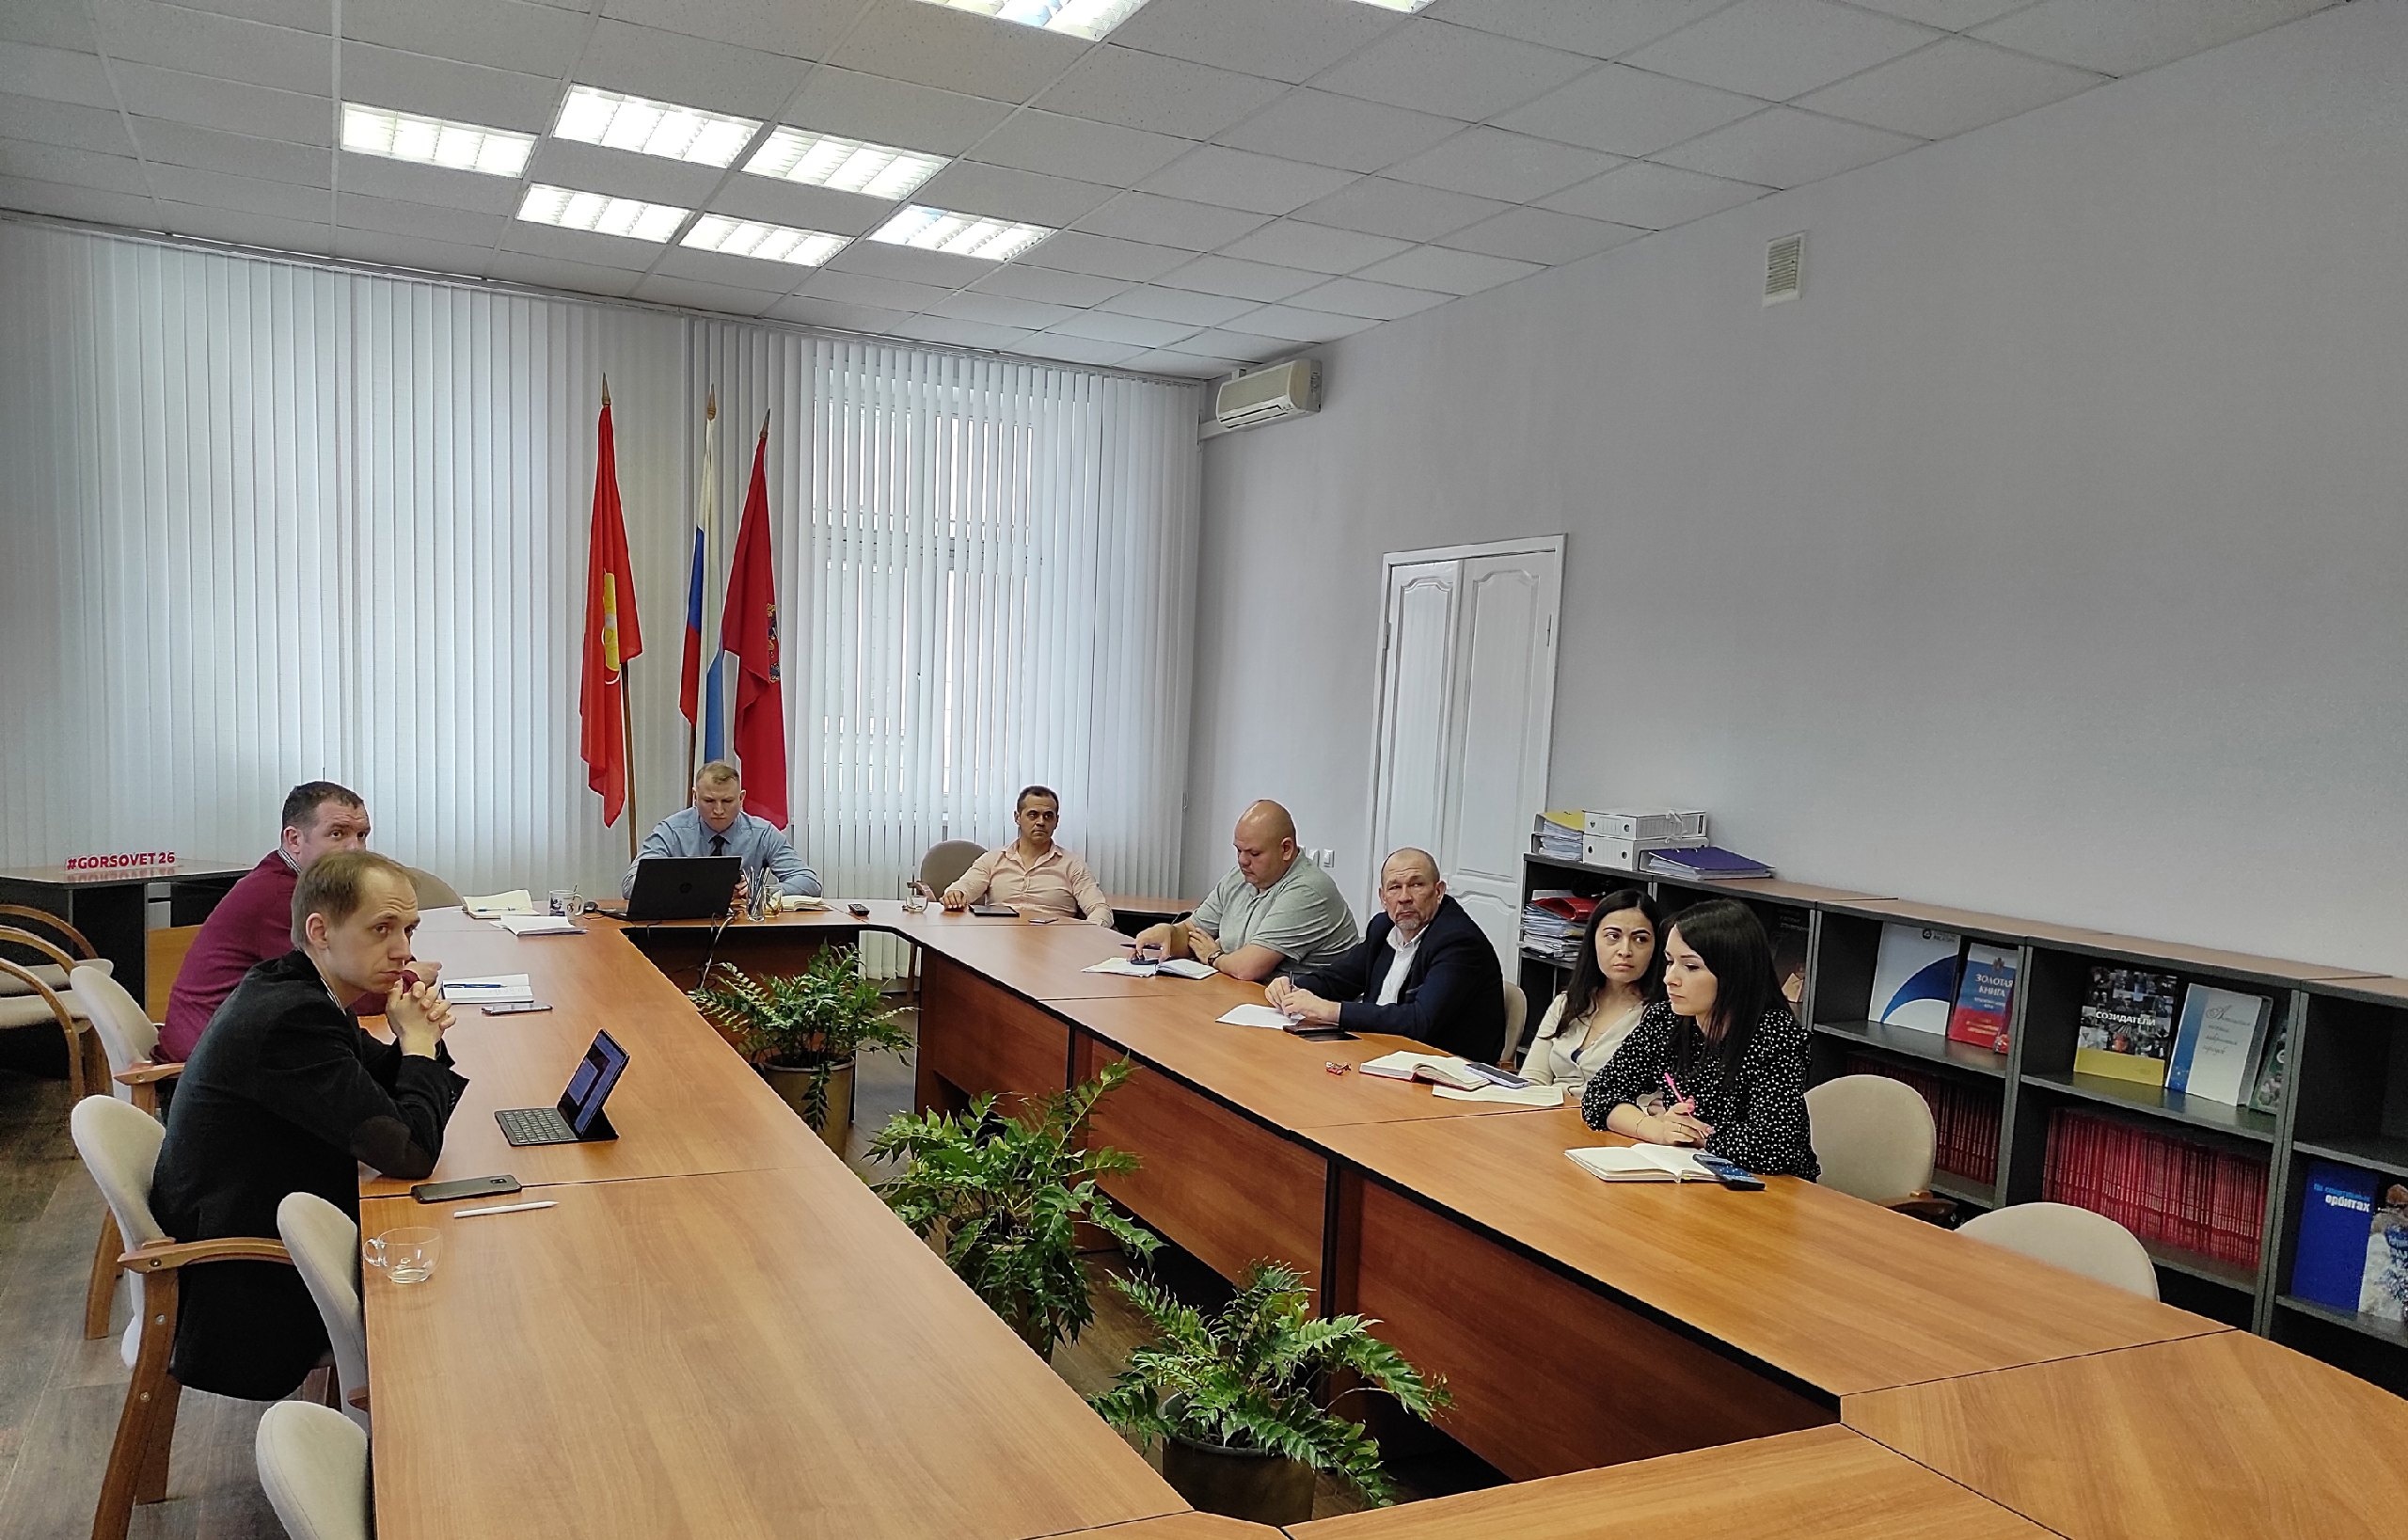 В зале заседаний Совета депутатов ЗАТО г. Железногорск прошла видеоконференция посвящённая реализации «Программы Поддержки Местных Инициатив»